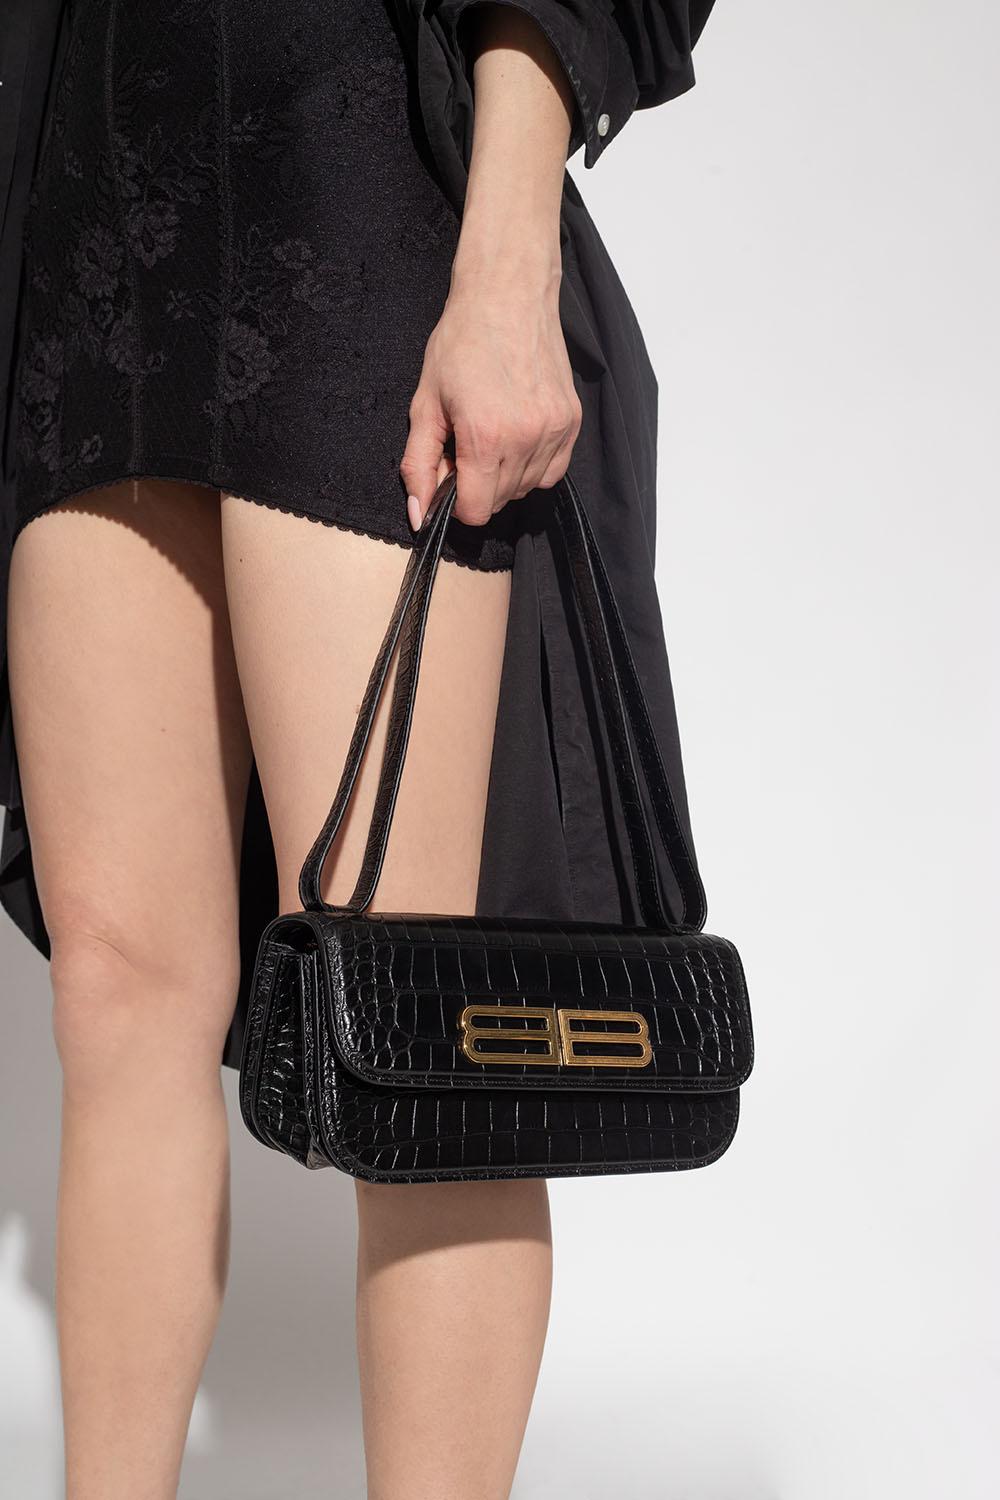 Balenciaga Small Gossip Bag in Black  FWRD